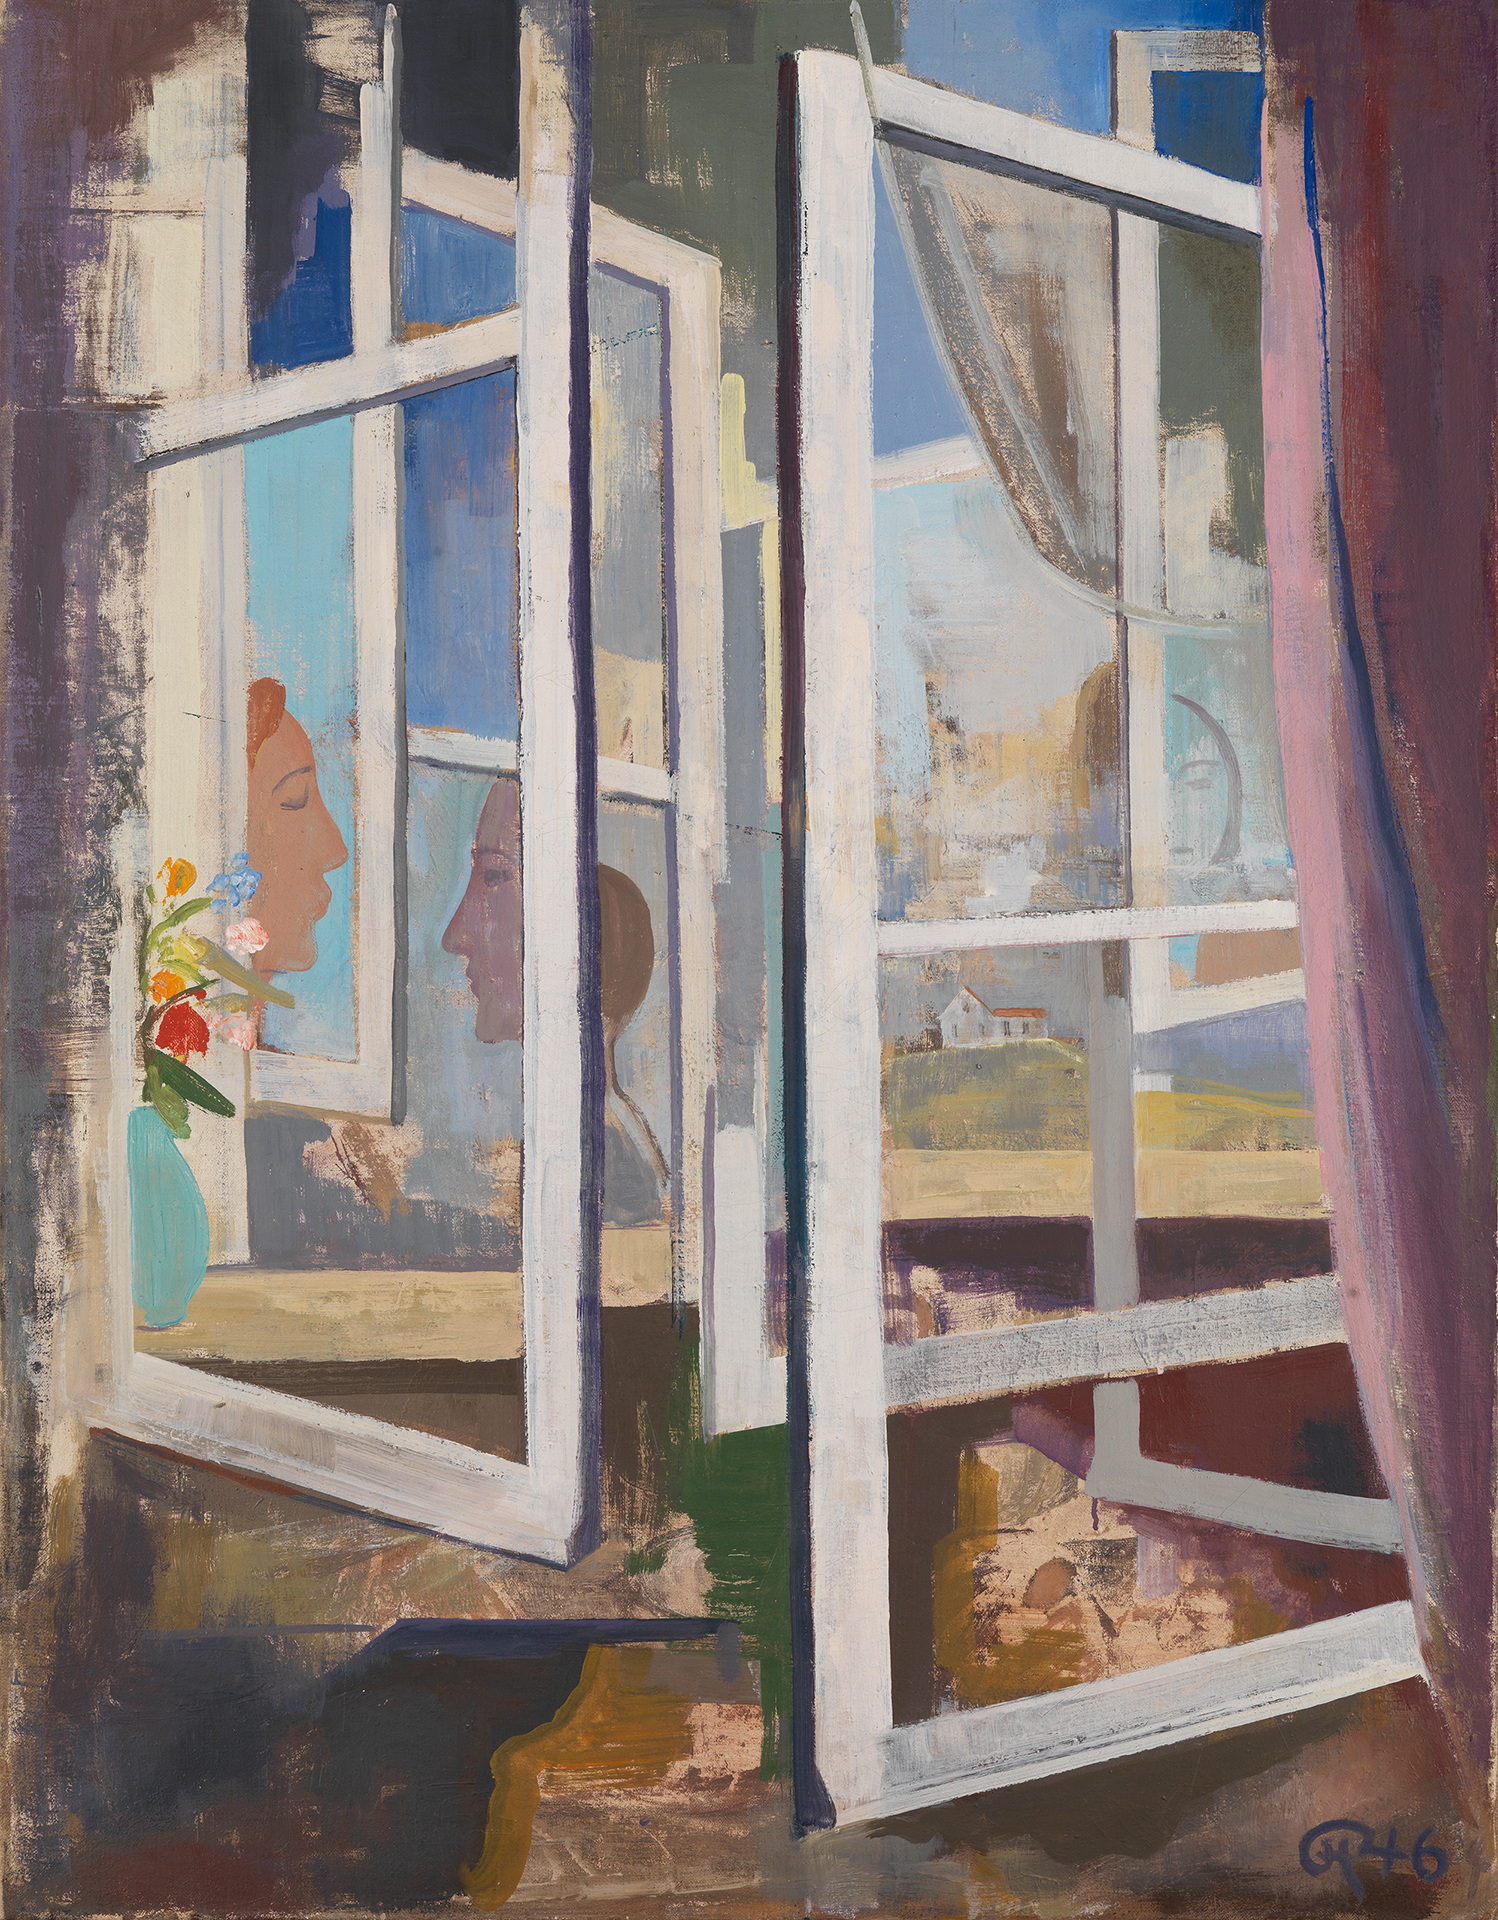 Gemälde von Karl Hofer. Hintereinander gestaffelte, geöffnete Fenster geben Blick auf unterschiedliche Ansichten frei. Unter anderem Blumenvase, Landschaft und Frauengesichter im Profil.